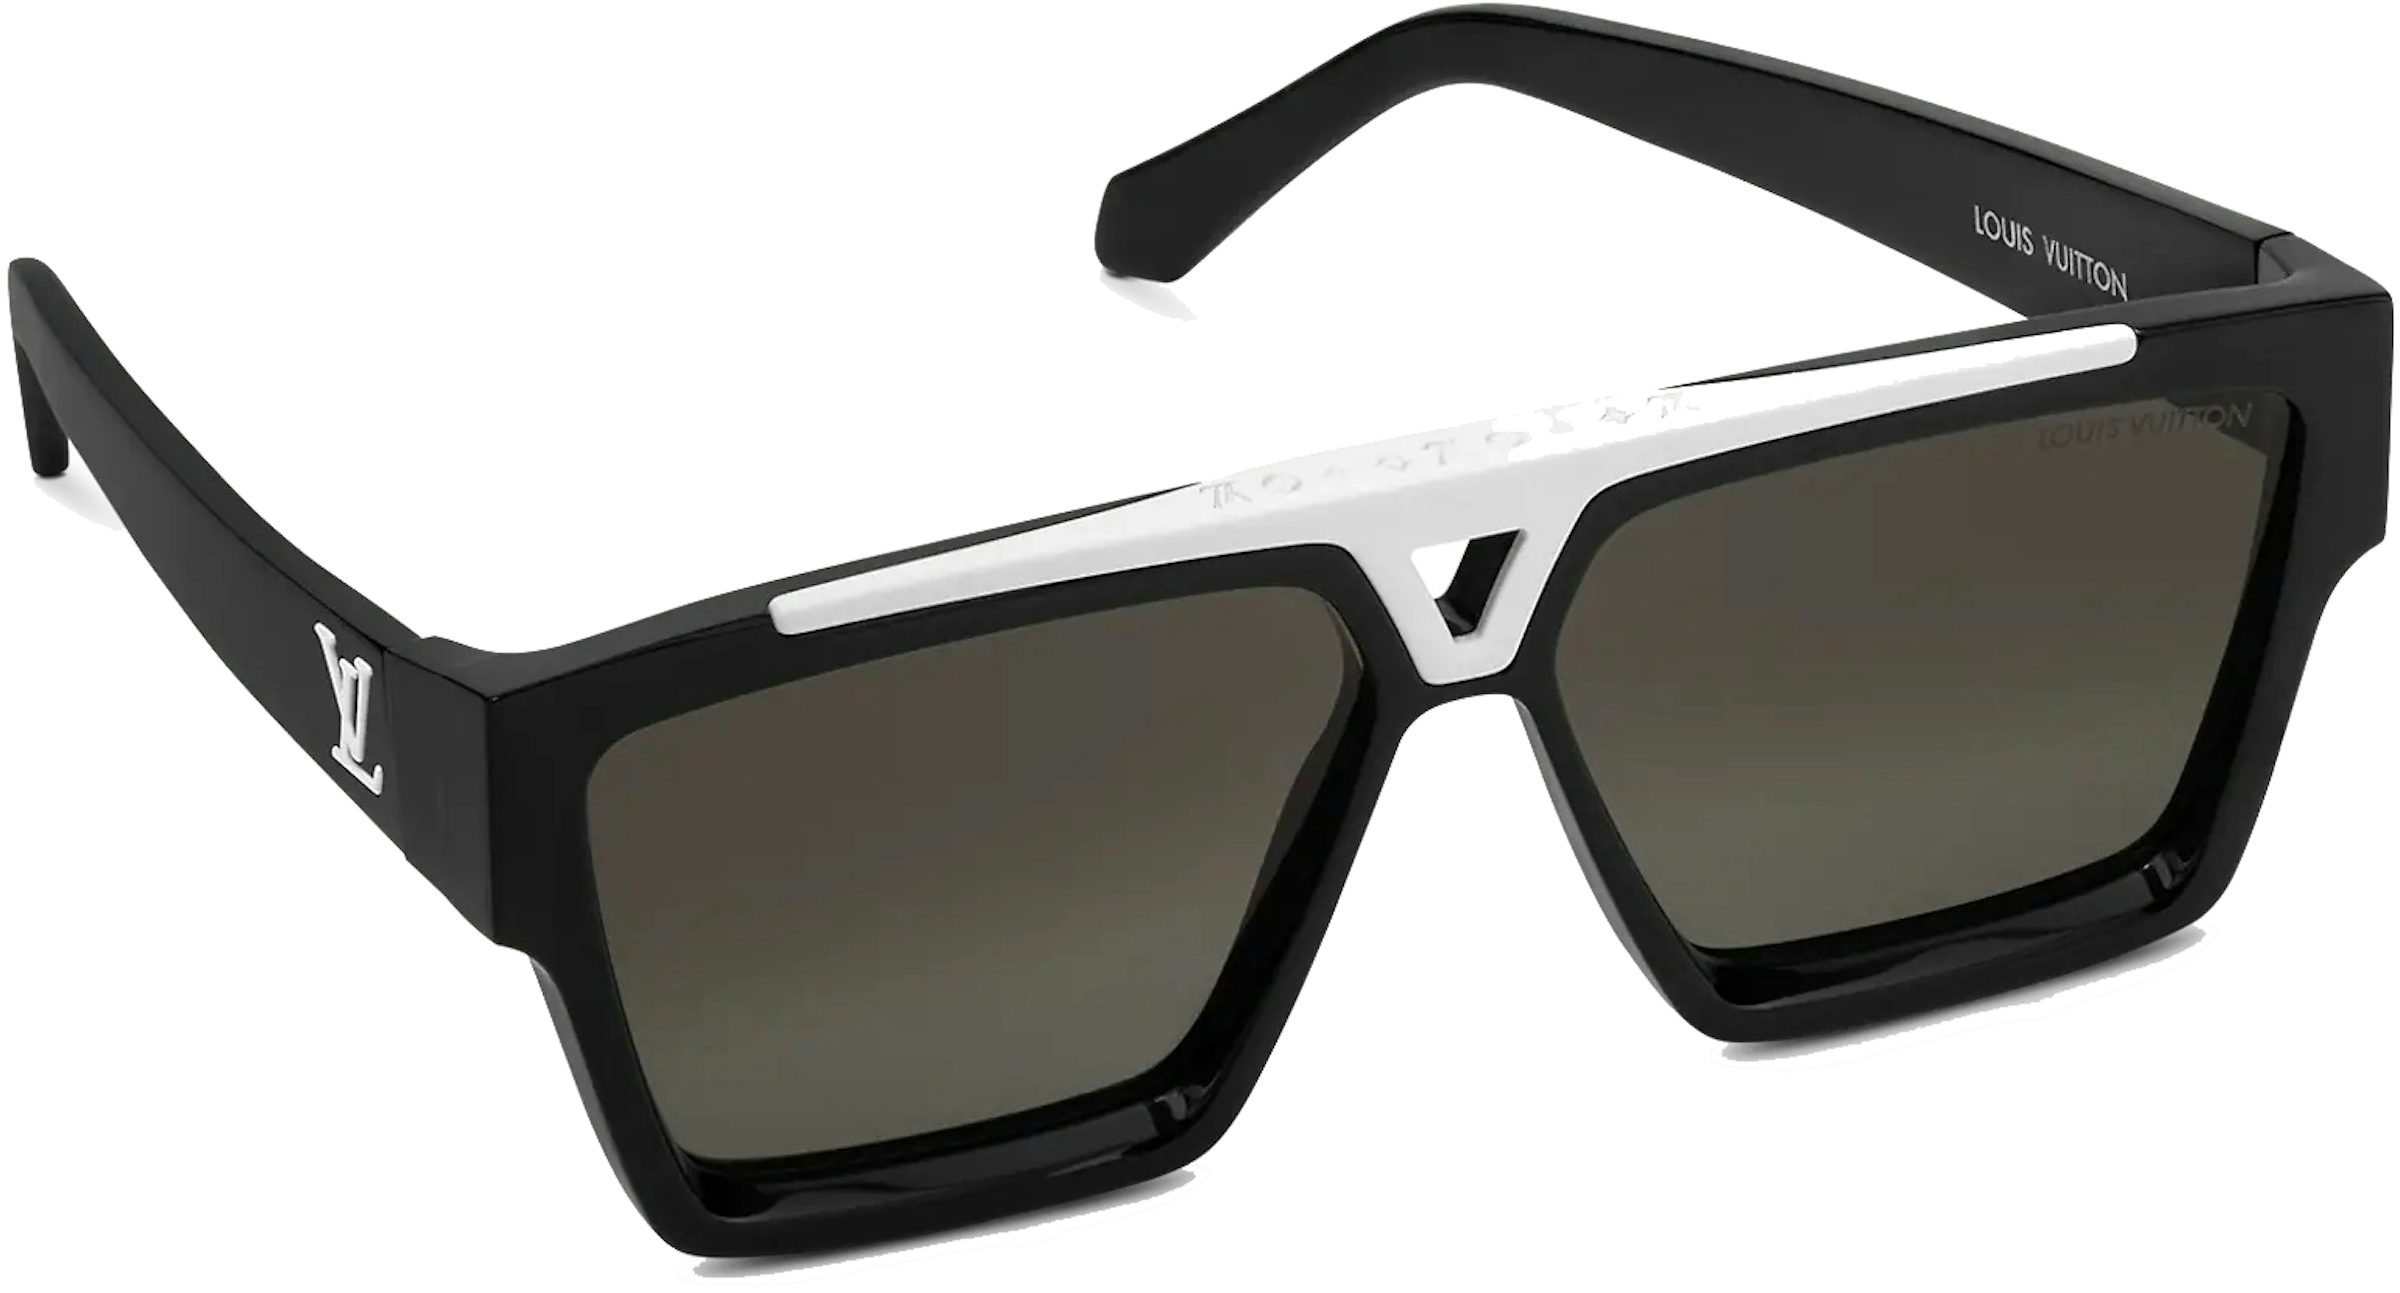 Louis Vuitton Enigme GM Sunglasses - Black Sunglasses, Accessories